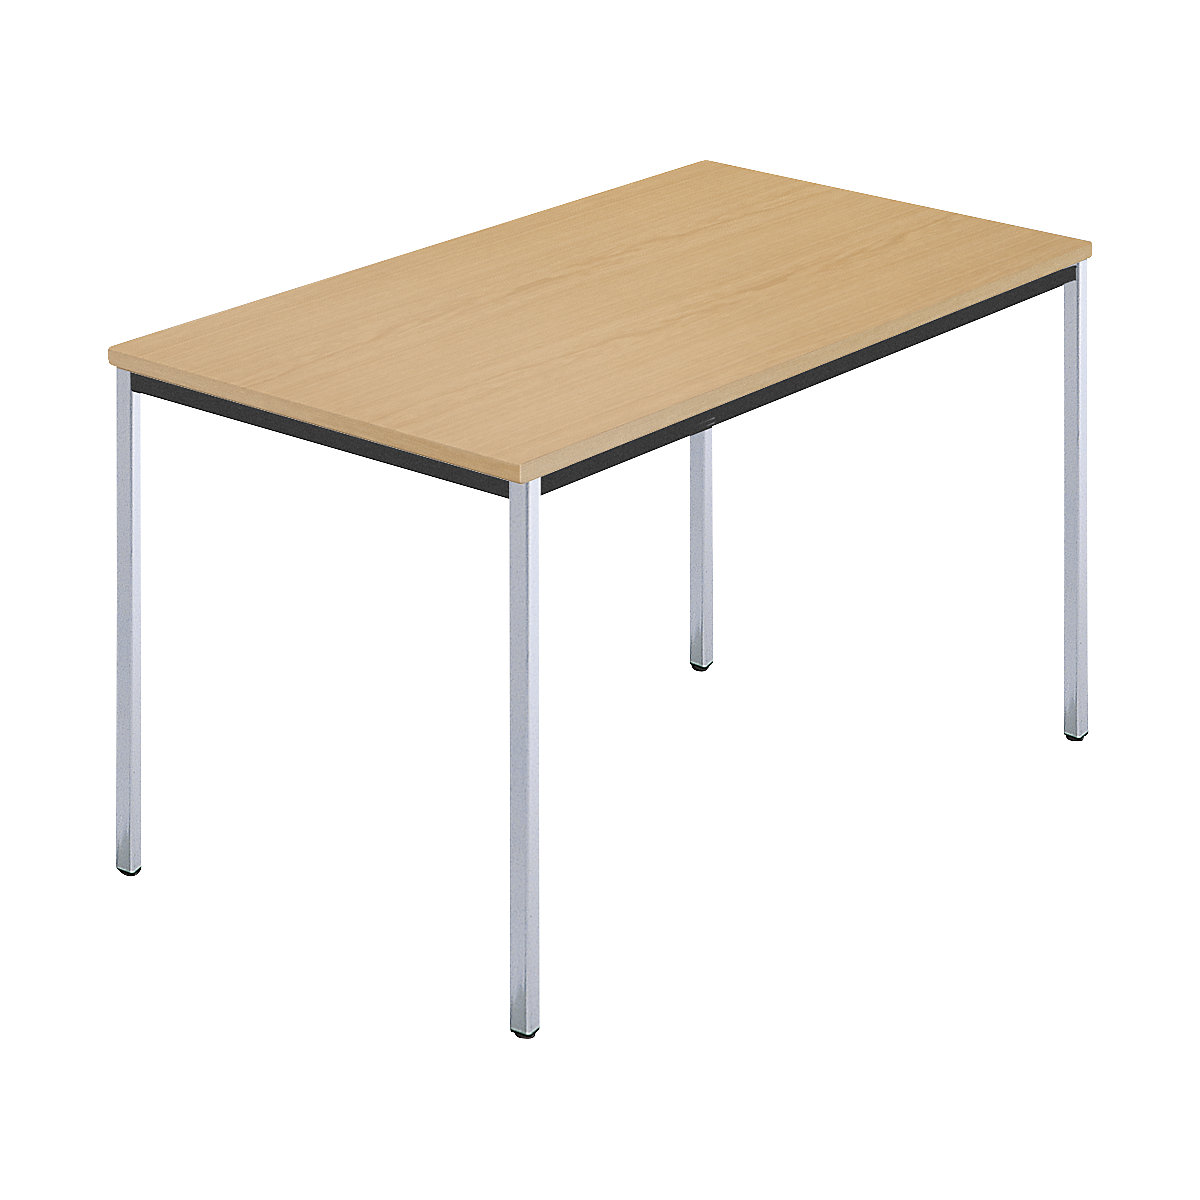 Rechthoekige tafel, met vierkante, verchroomde tafelpoten, b x d = 1200 x 800 mm, naturel beukenhout-6